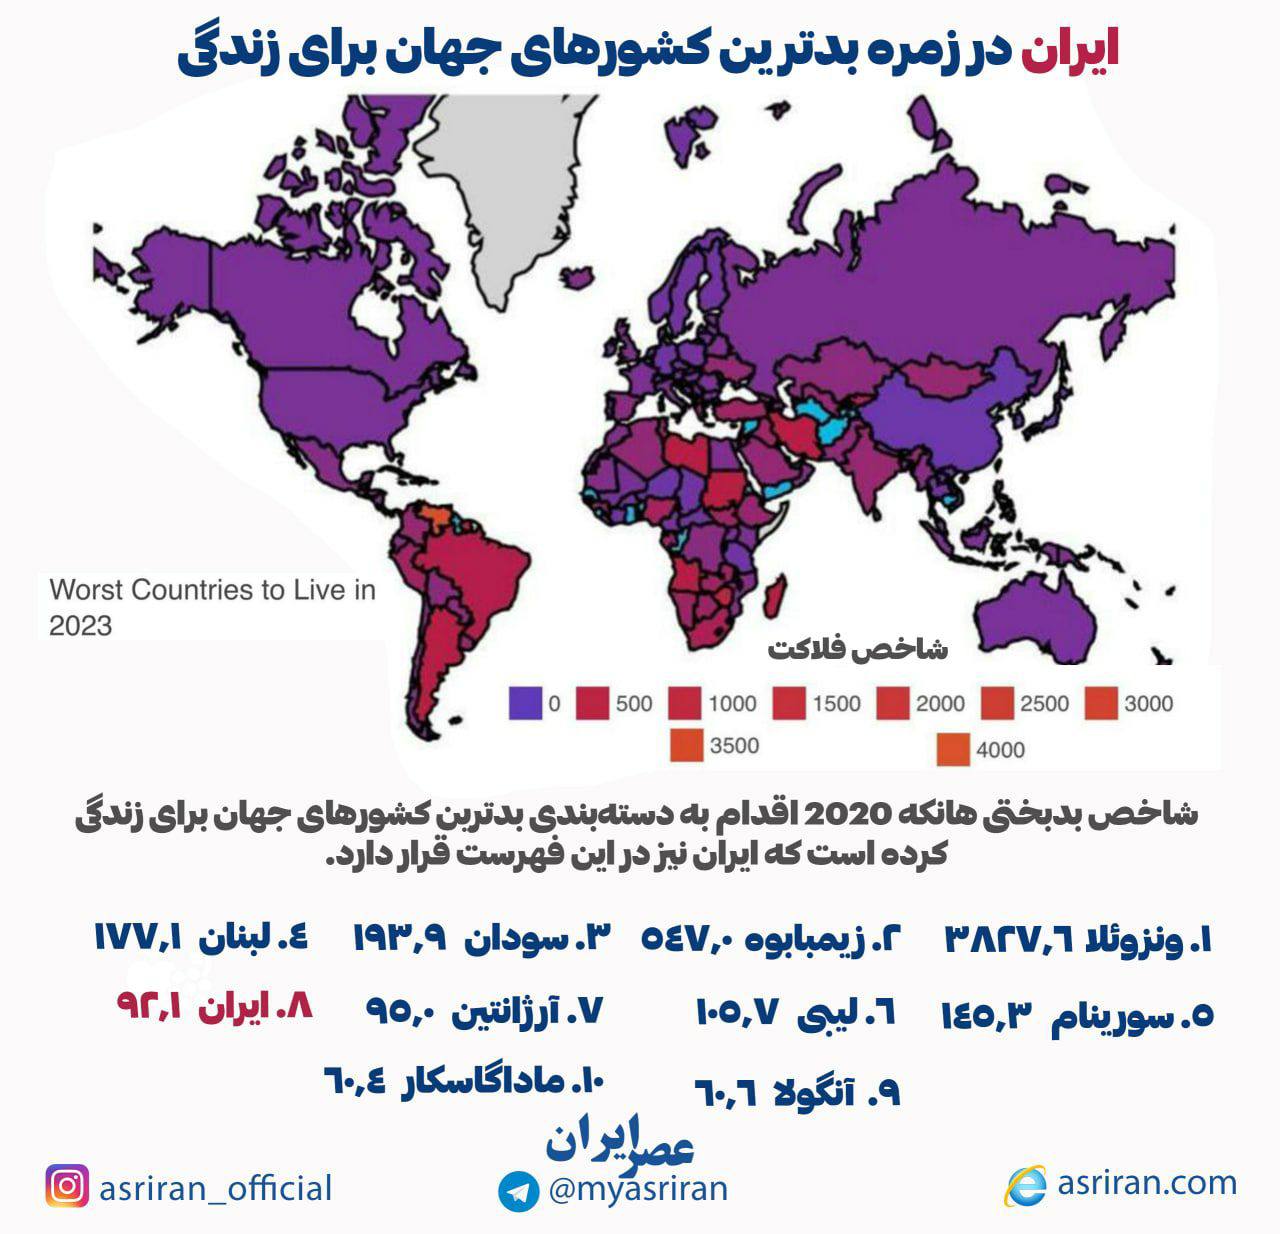 ایران در زمره بدترین کشورهای جهان برای زندگی/ اینفوگرافی